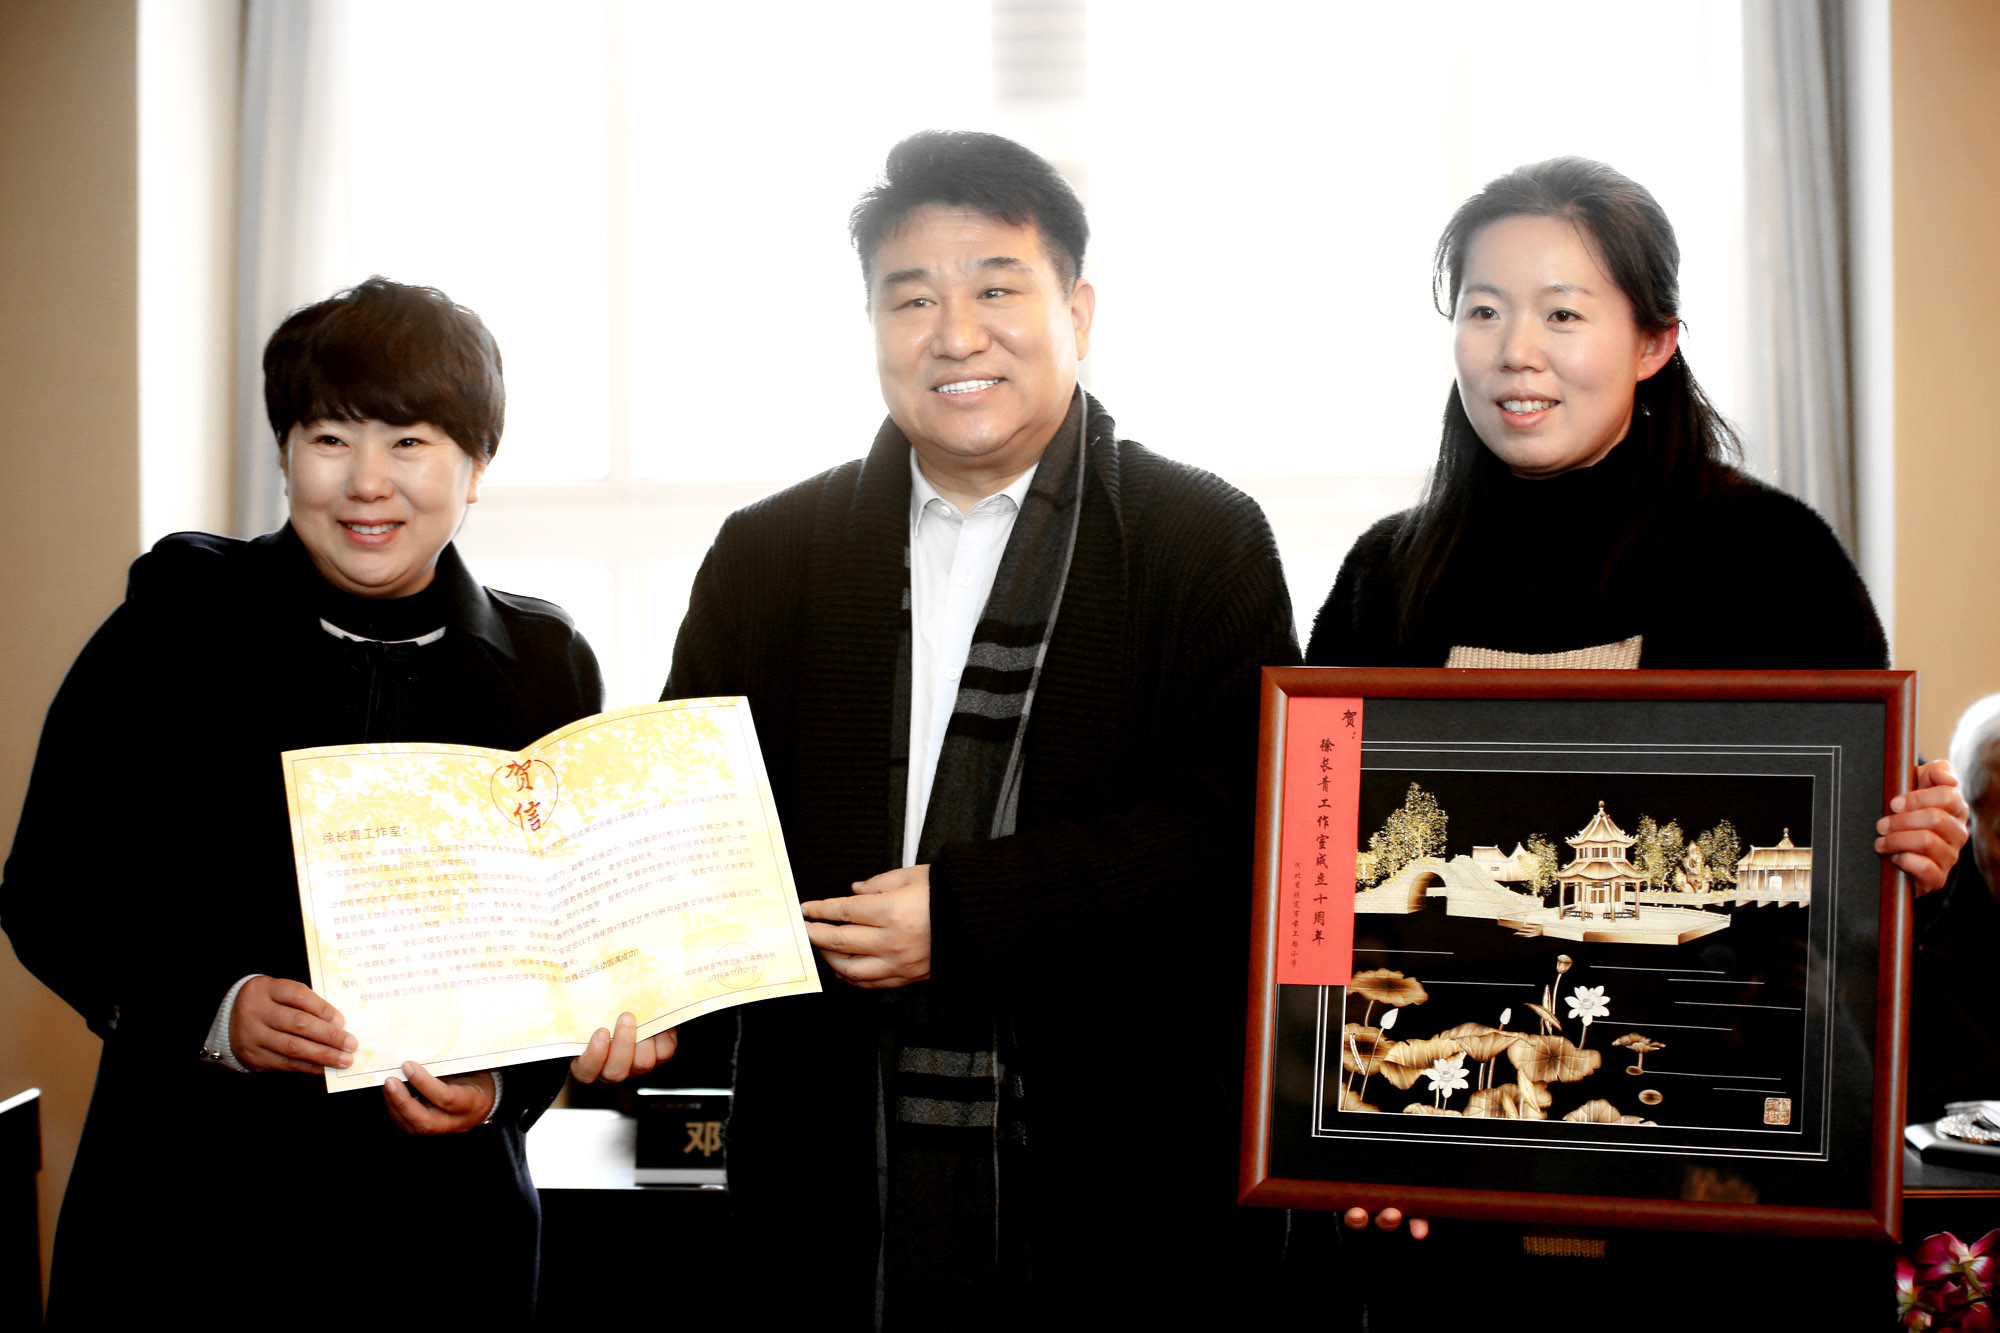 河北省保定市莲池区文体教育局赠送的贺信及纪念品。